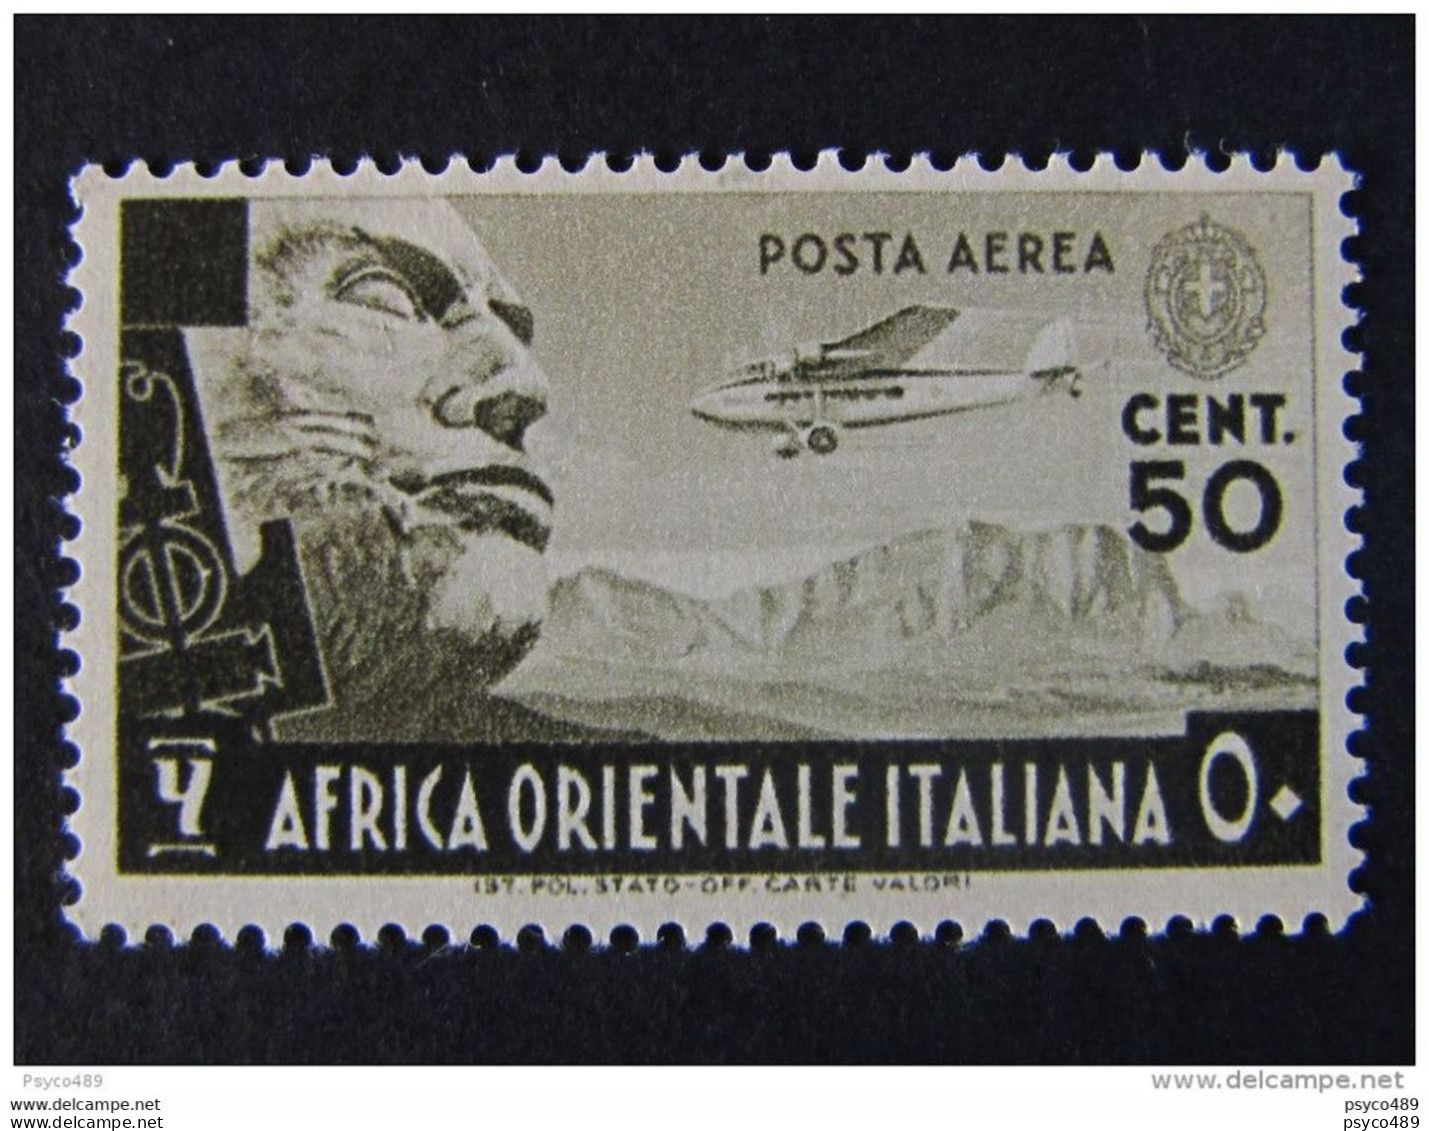 ITALIA Africa Orientale Italiana Aerea -1938- "Soggetti Vari" C. 50 MH* (descrizione) - Italian Eastern Africa